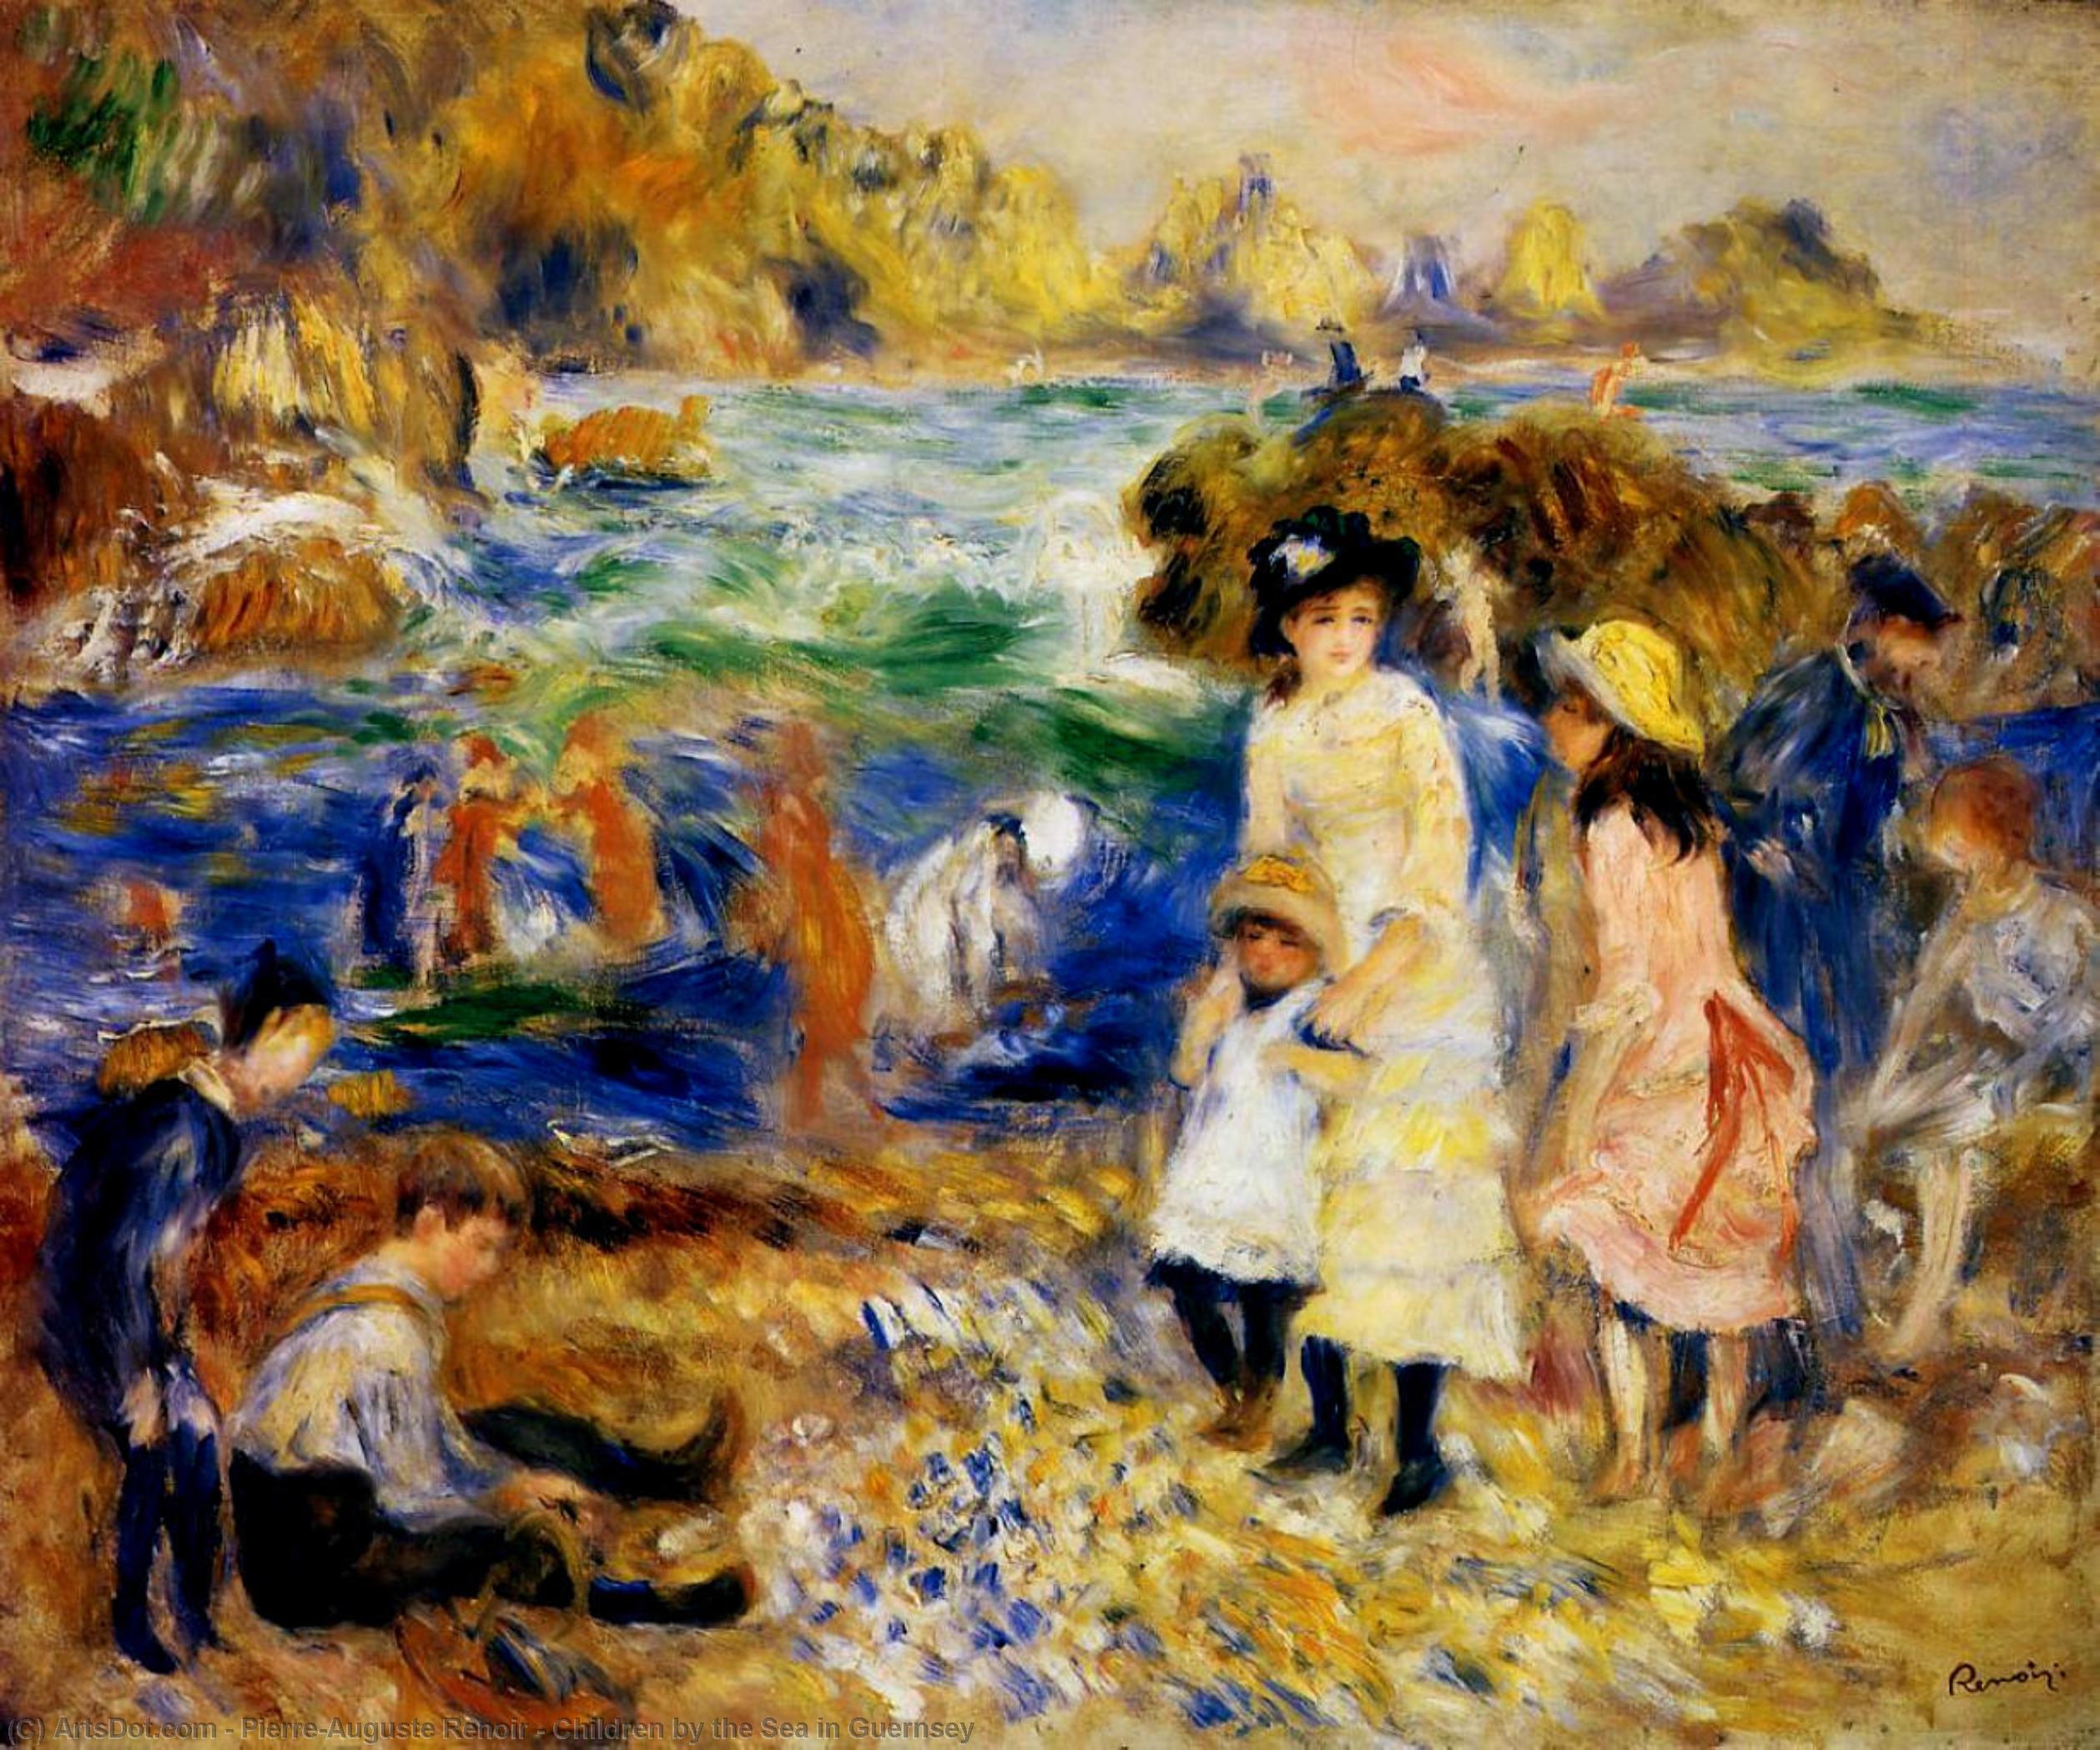 Compra Riproduzioni D'arte Del Museo Bambini vicino al mare a Guernsey, 1883 di Pierre-Auguste Renoir (1841-1919, France) | ArtsDot.com